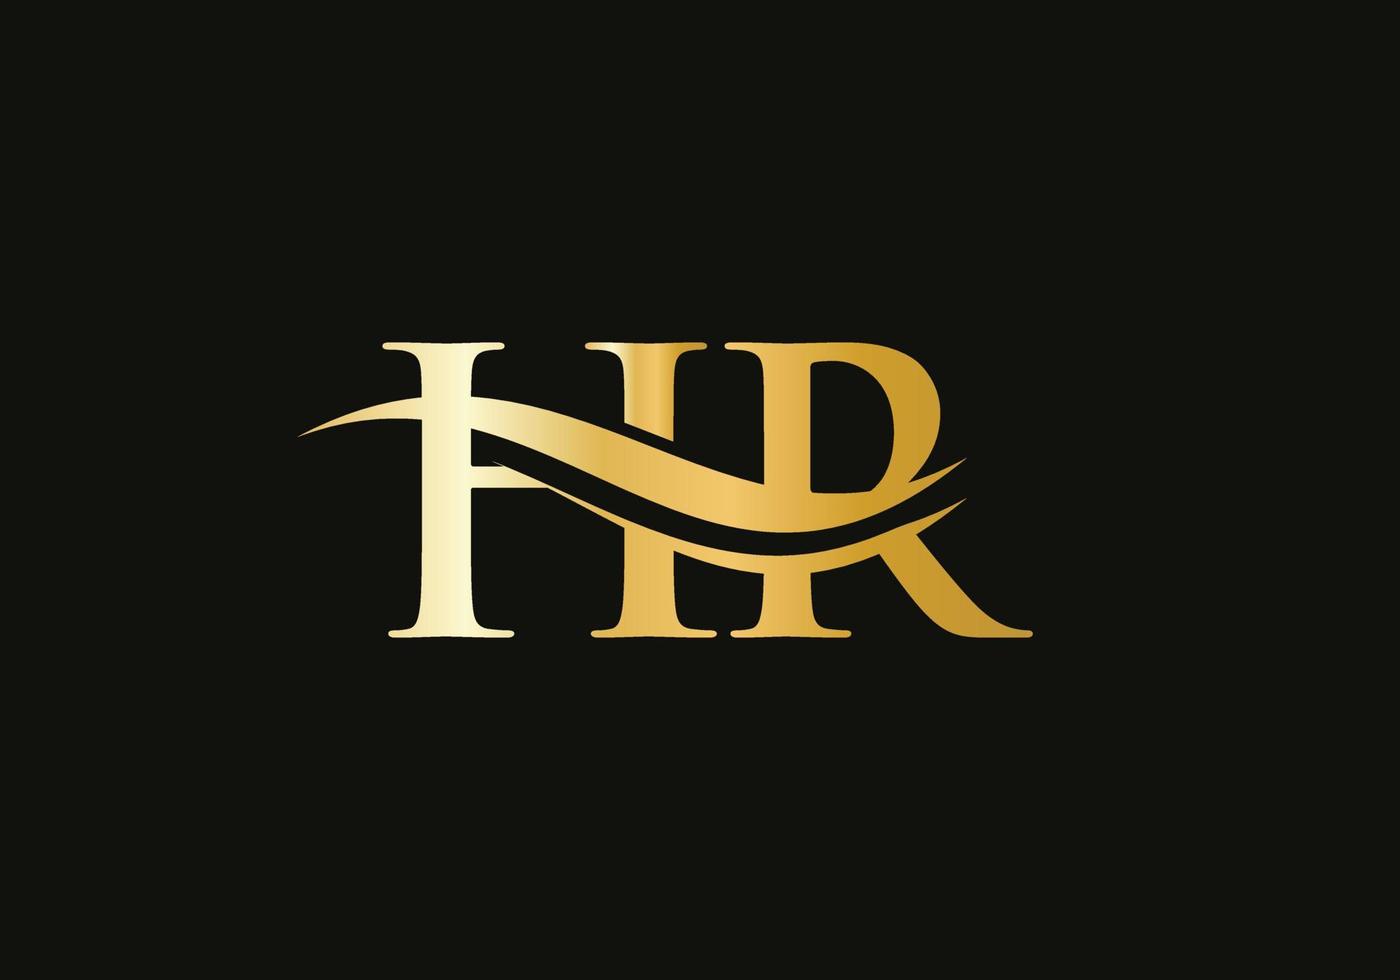 création de logo swoosh letter hr pour l'identité de l'entreprise et de l'entreprise. logo hr vague d'eau avec tendance moderne vecteur